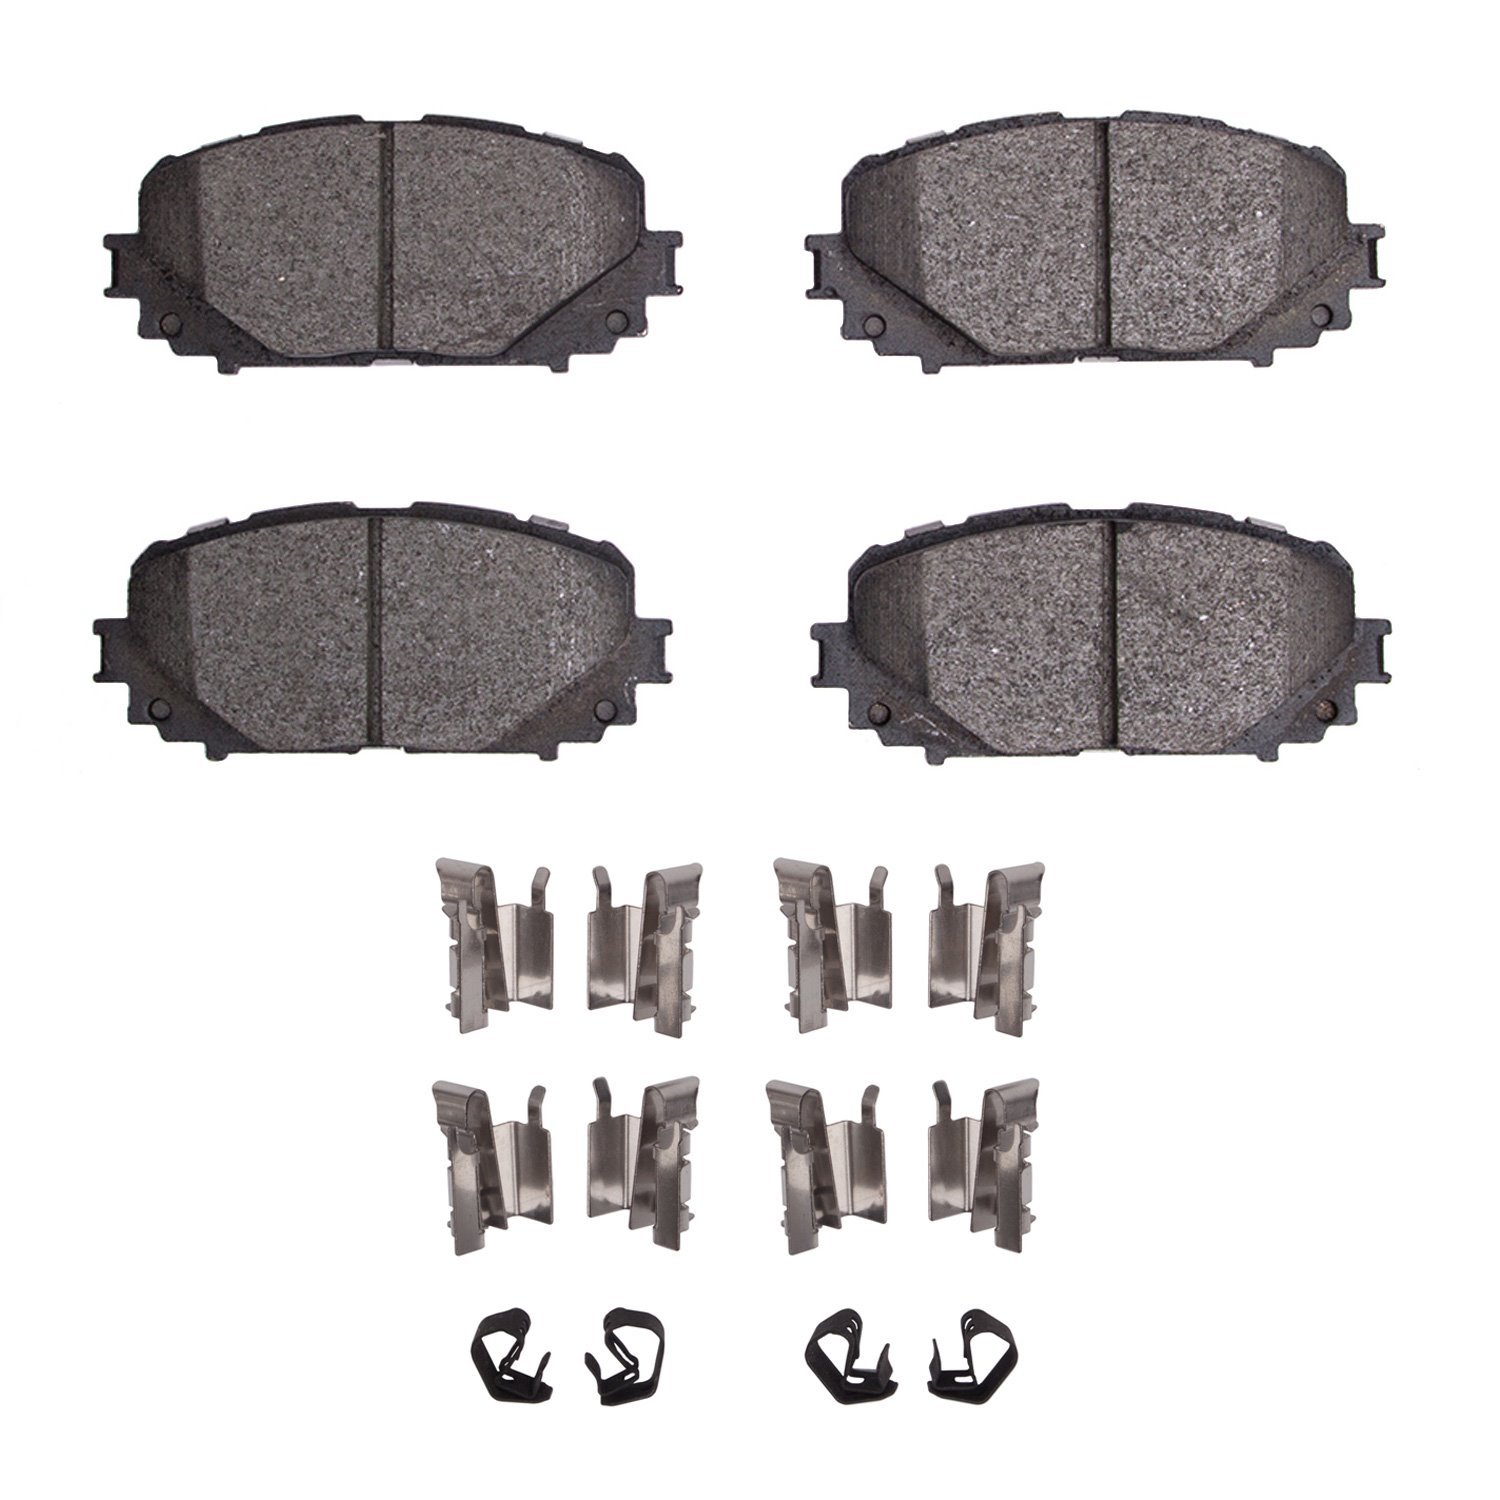 1310-1628-01 3000-Series Ceramic Brake Pads & Hardware Kit, 2012-2018 Lexus/Toyota/Scion, Position: Front